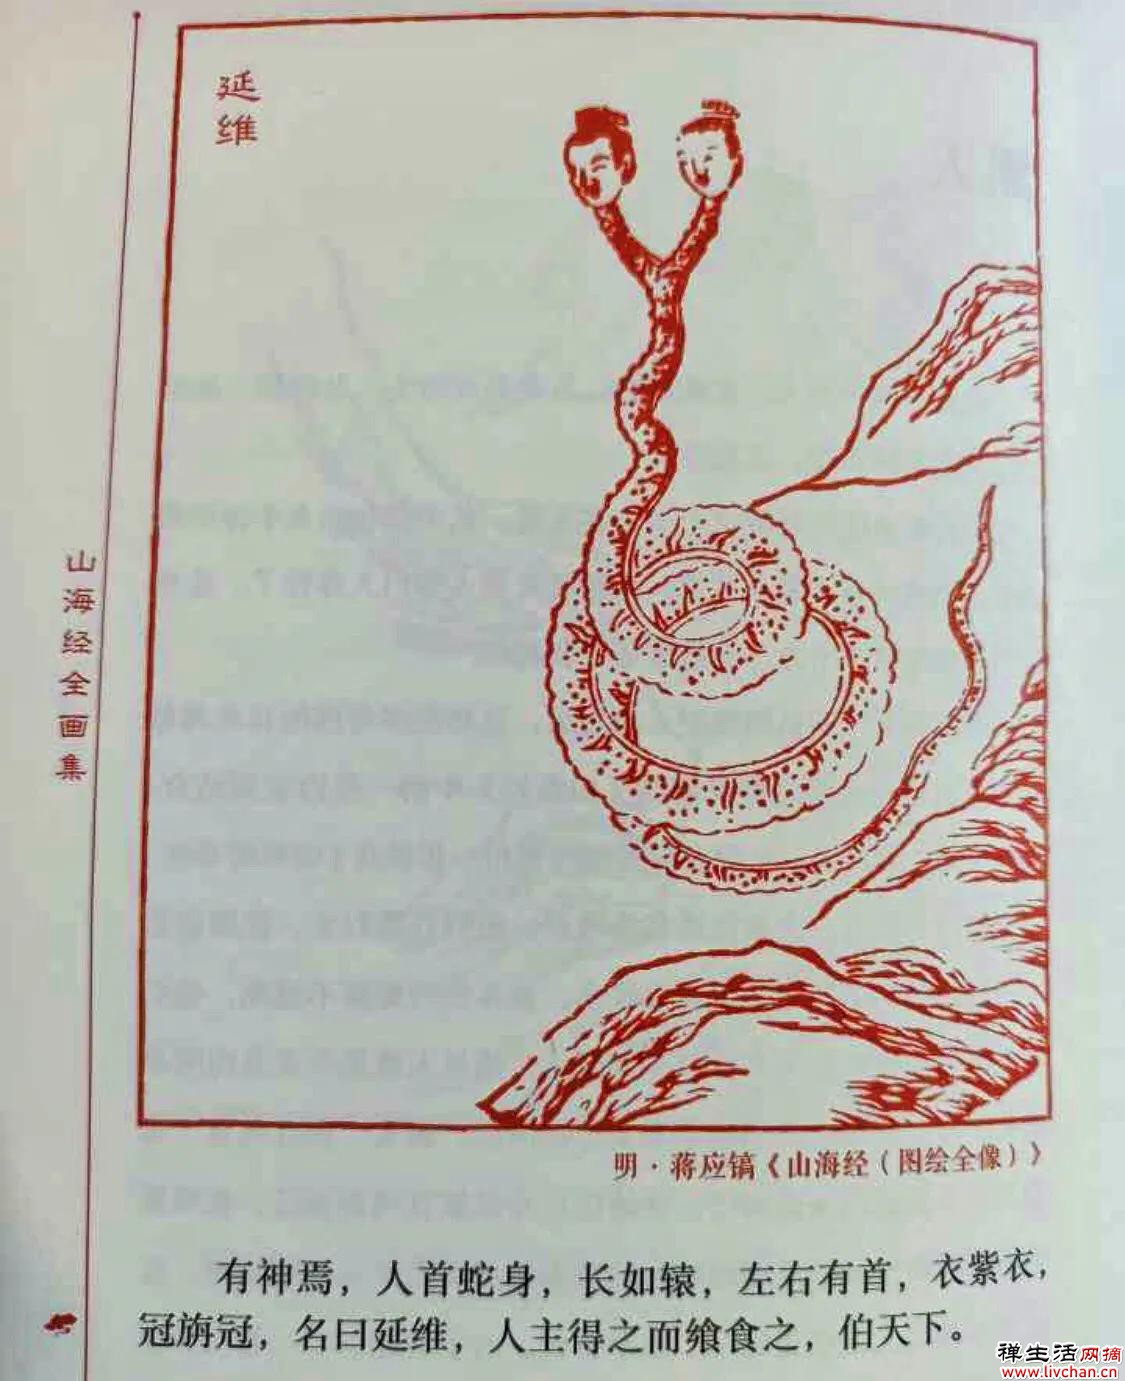 有个常用成语叫“虚与委蛇”，为什么“蛇”不读she而读yi？